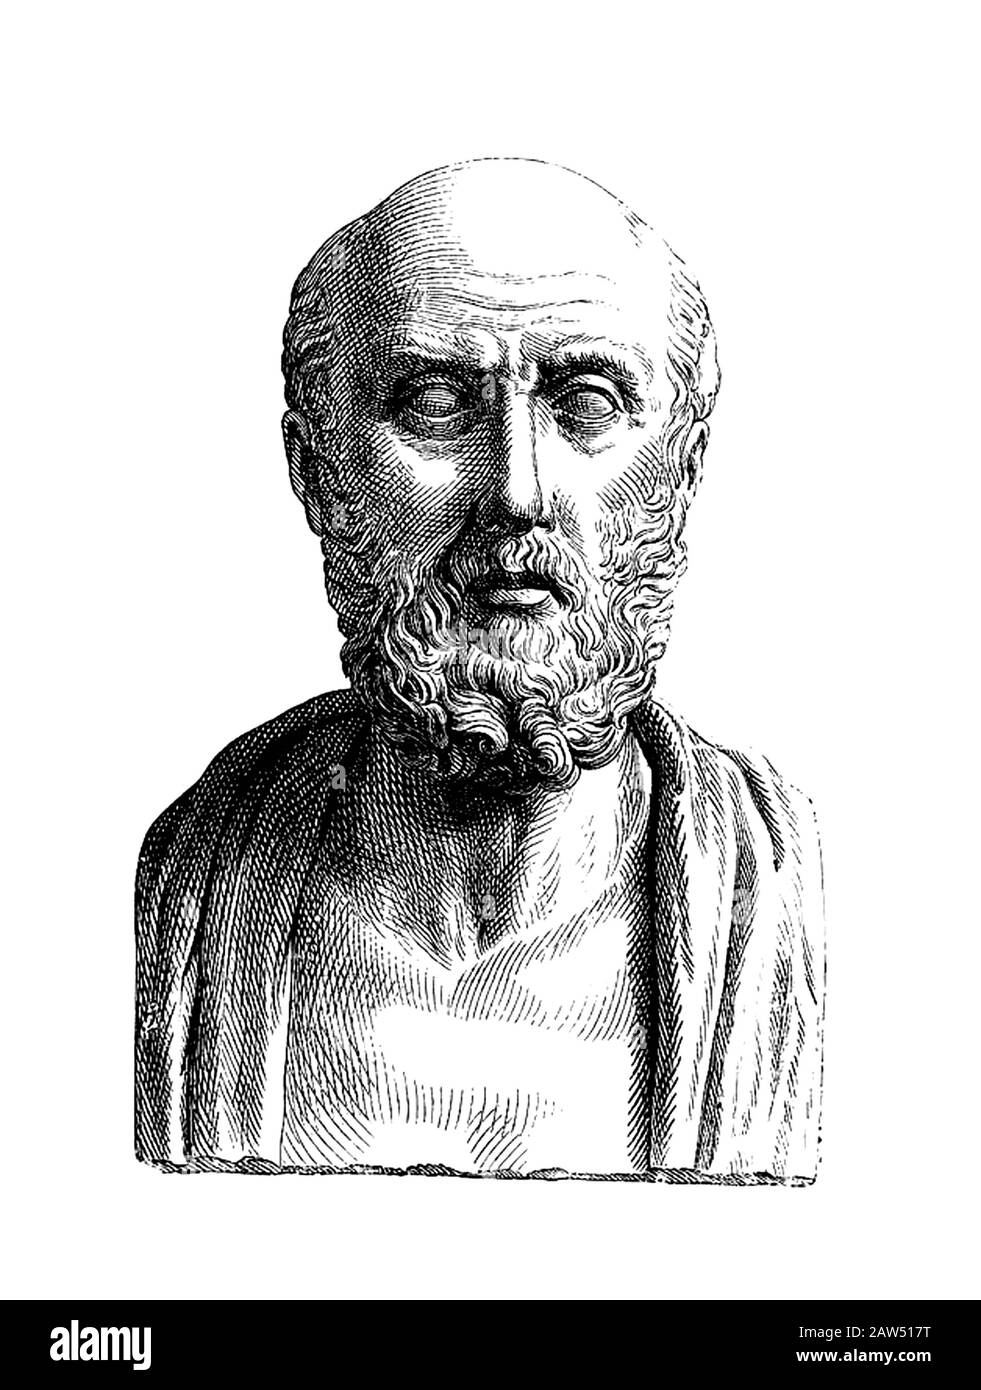 Il dottore greco IPPOCRATE di KOS ( Coo 460 - Larissa ca. 370 a.C ) , fondatore della medicina scientifica moderna. - IPPOCRATE - MEDICINA - SCIENZA - Foto Stock